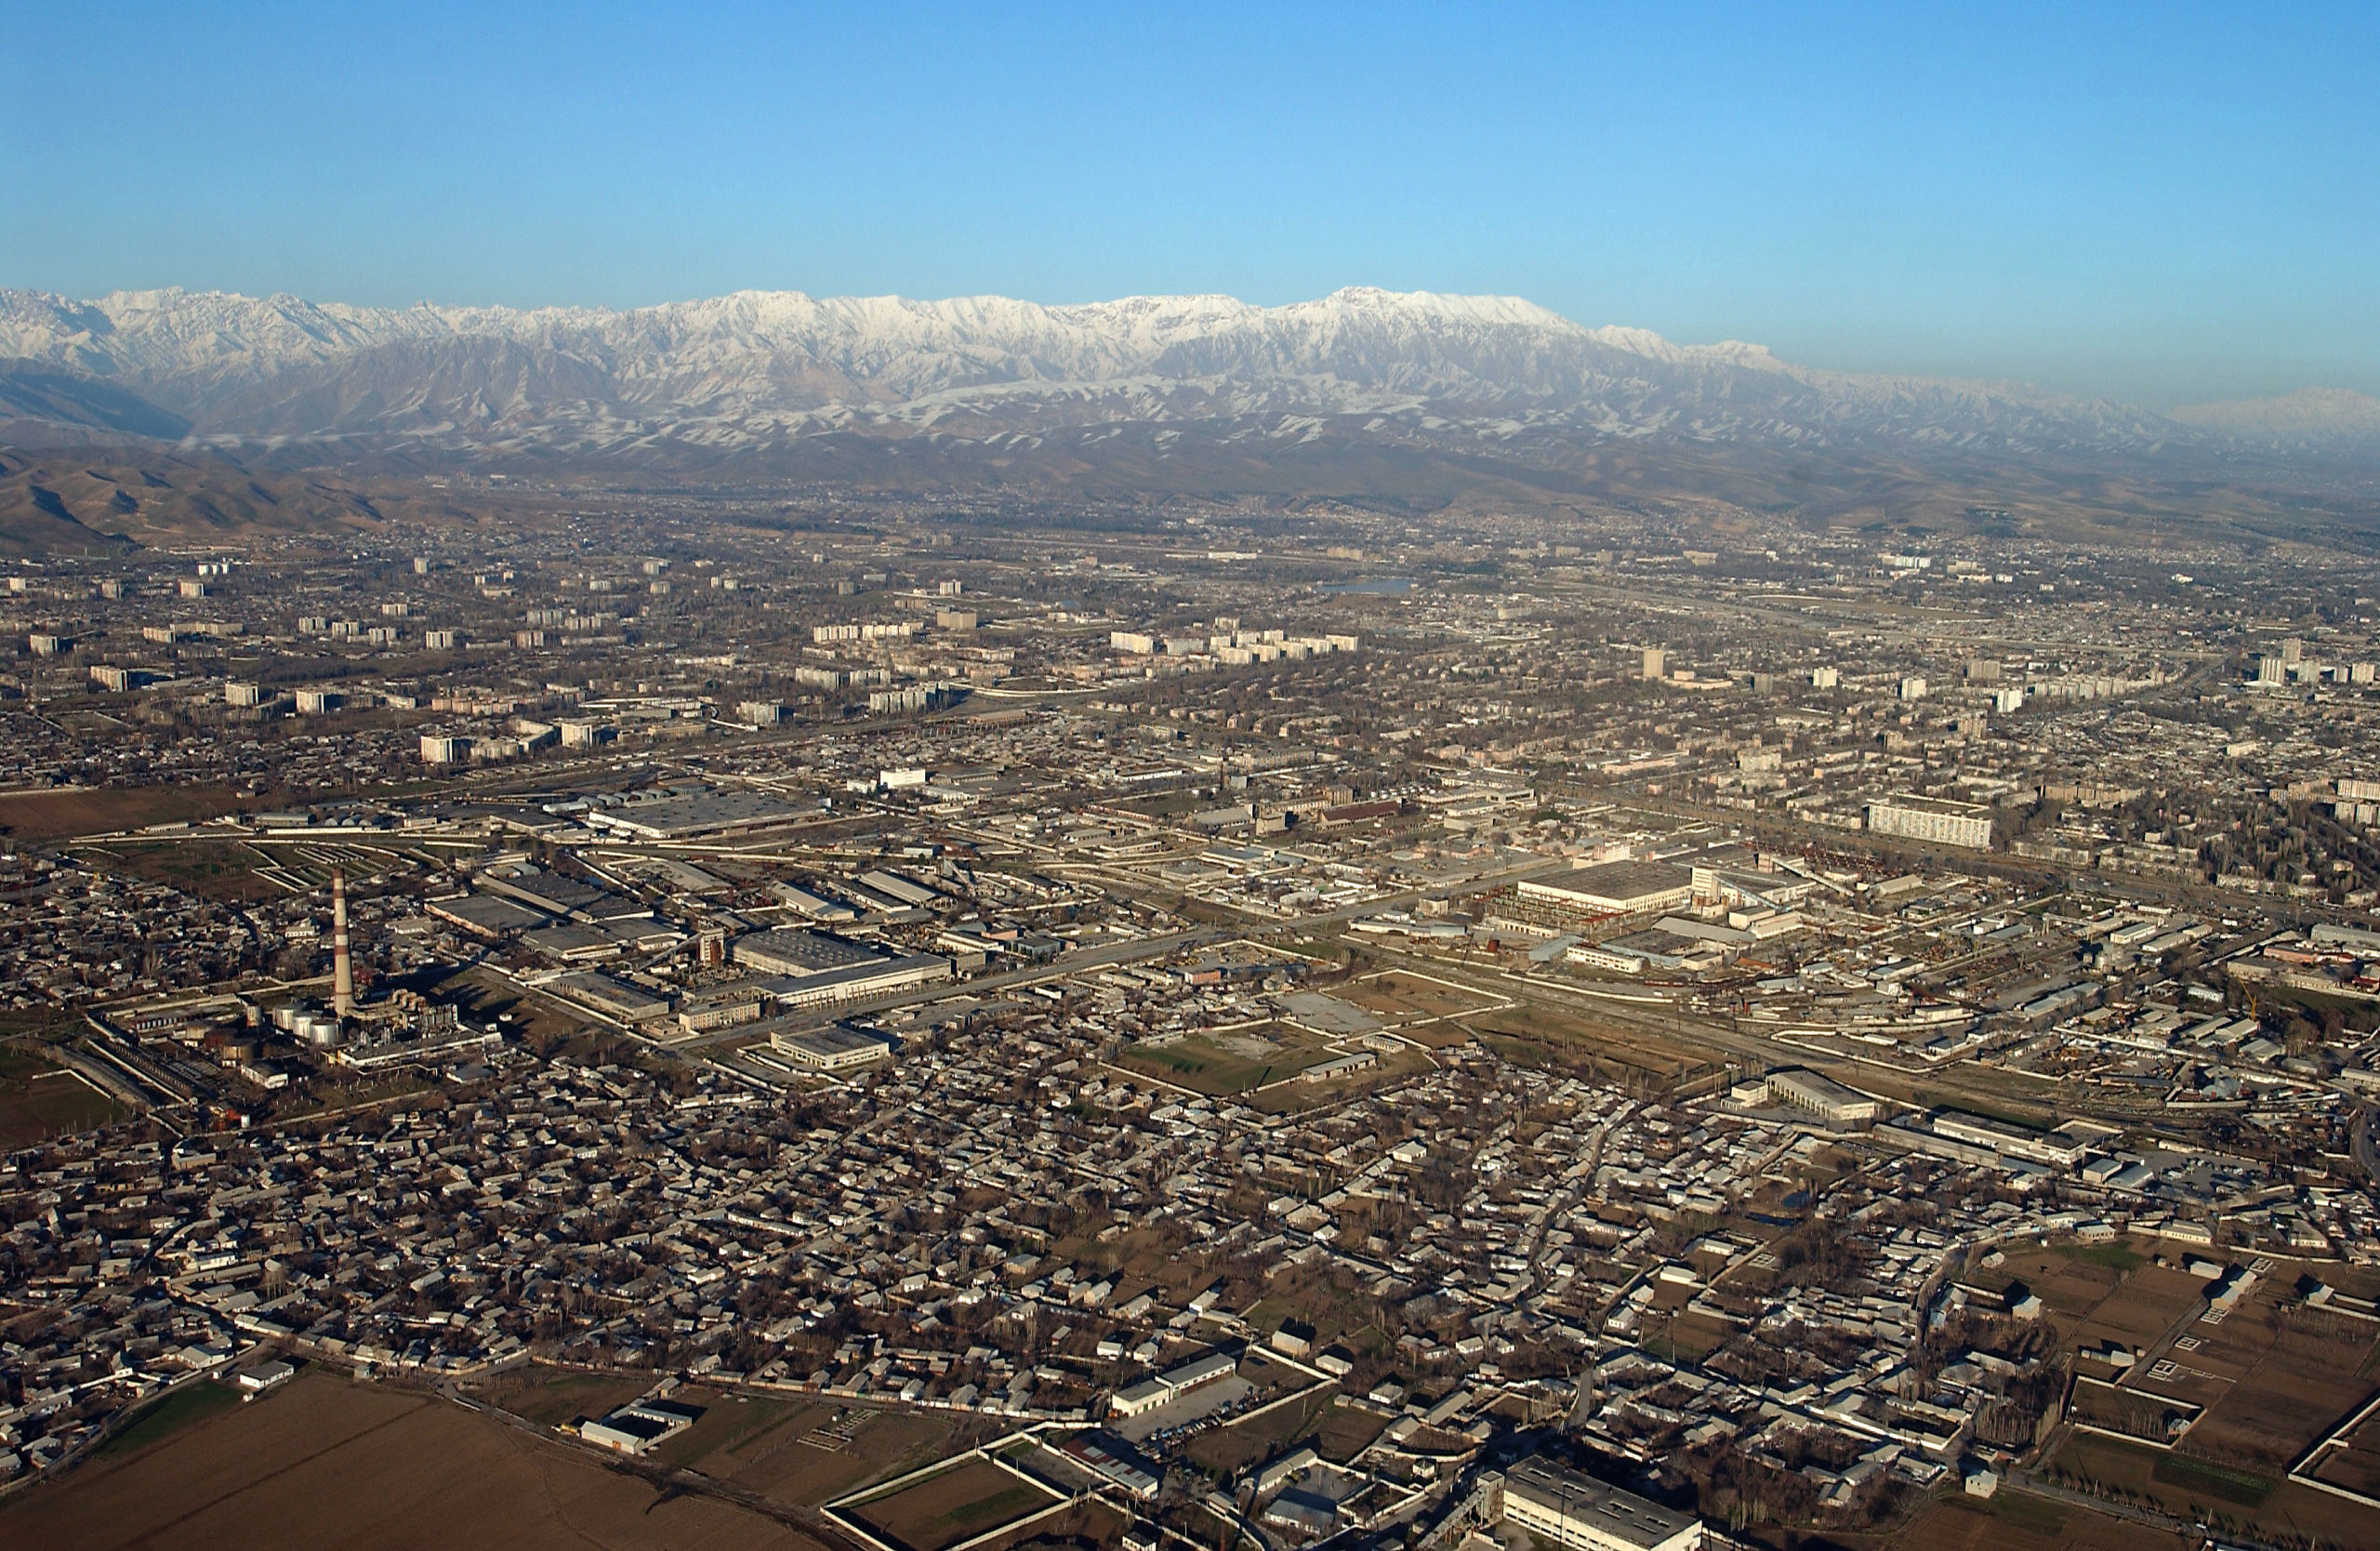  Doesjanbe, de hoofdstad van Tadjikistan. 